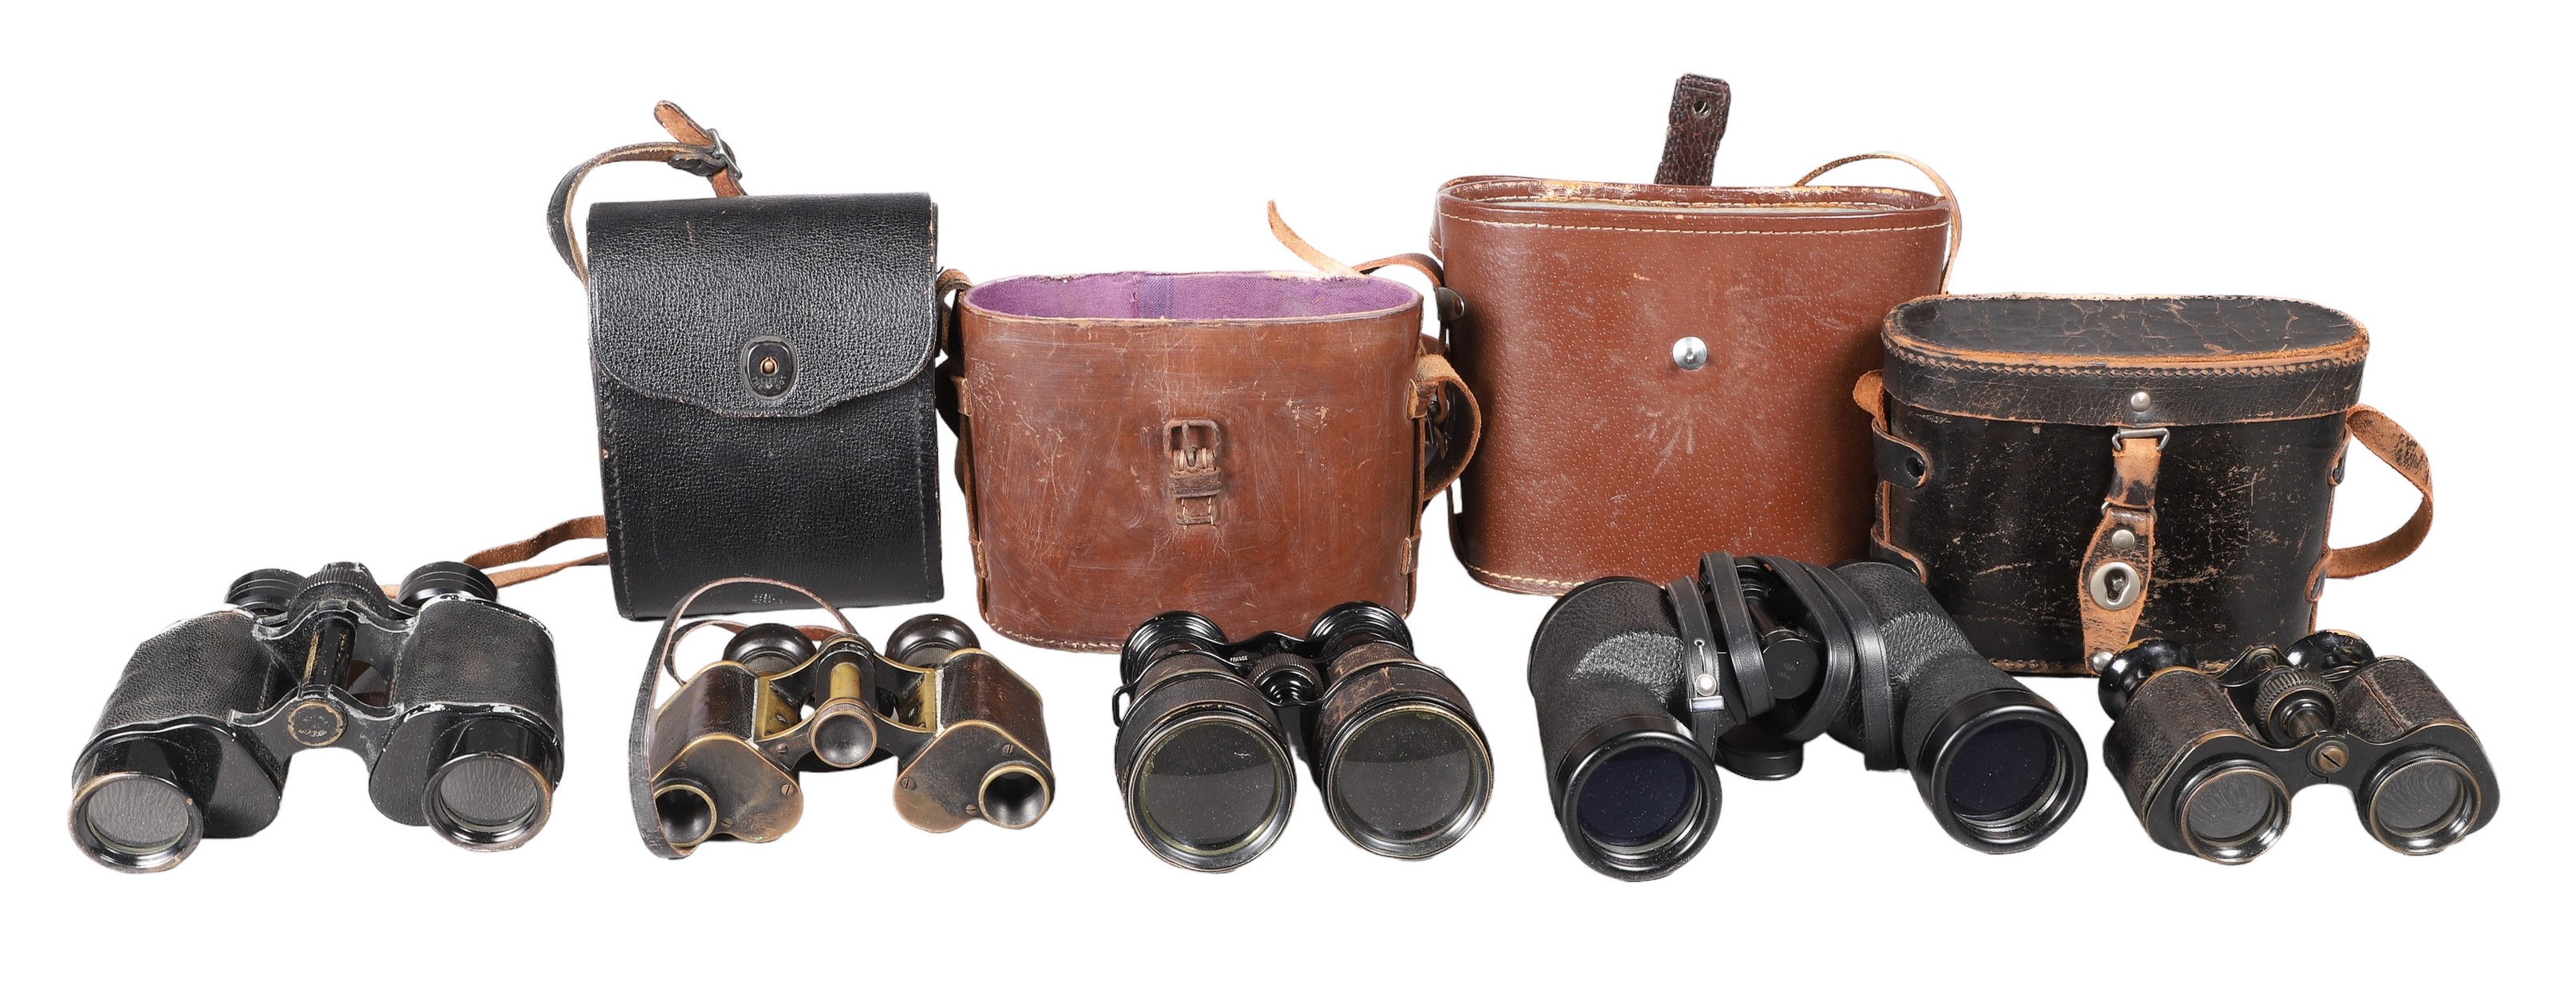  5 Pair of binoculars c o Colmont 2e13ca